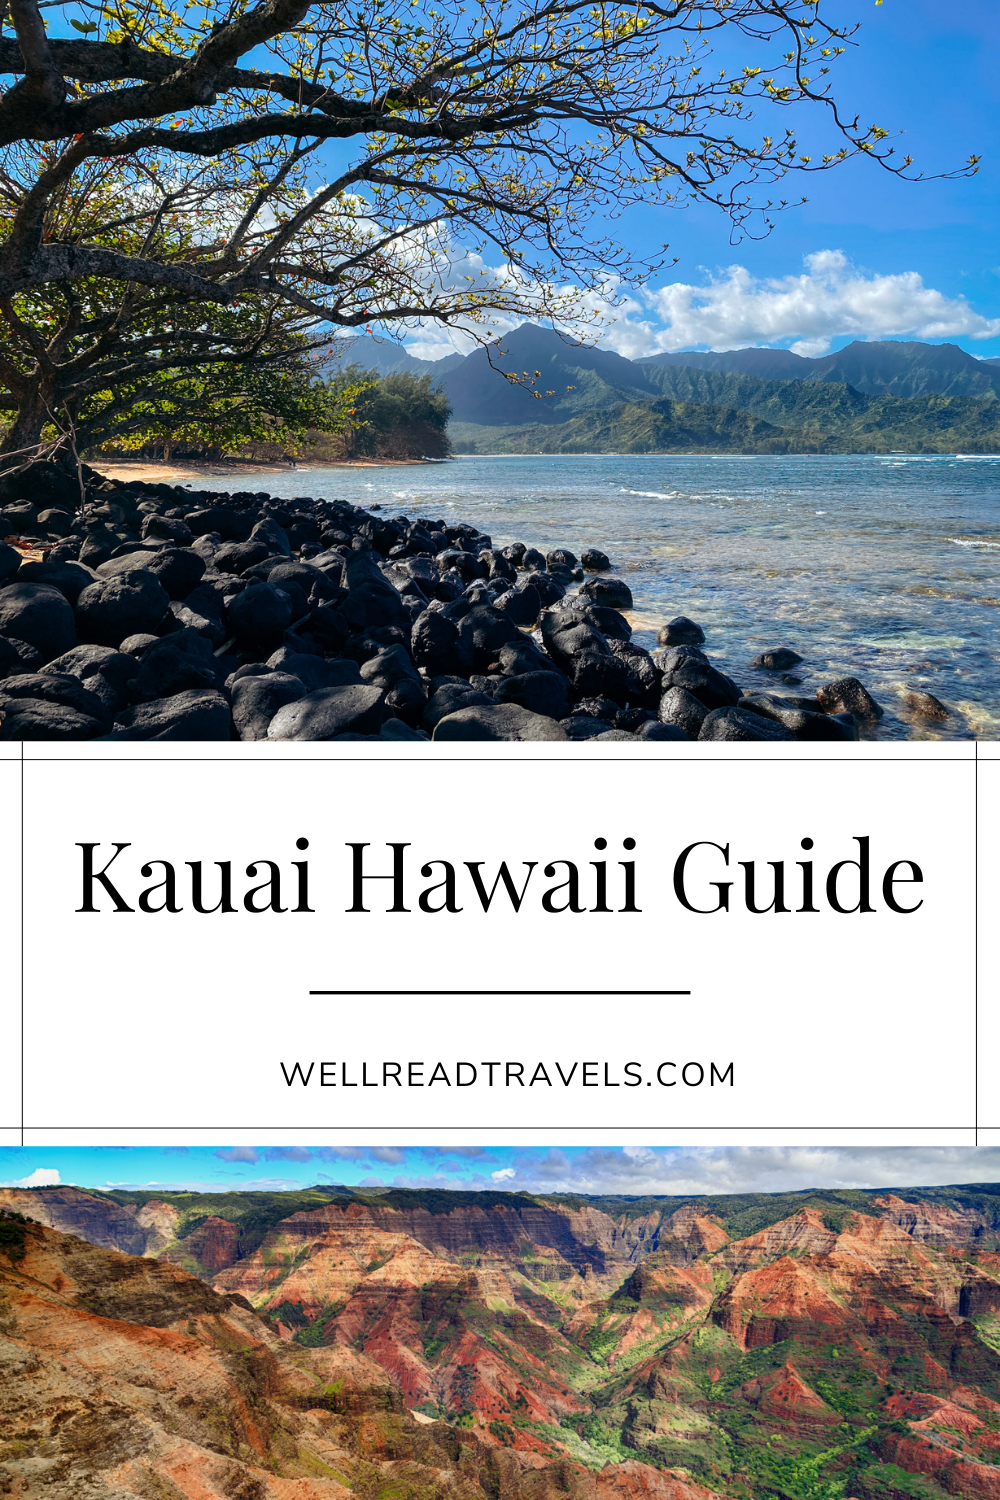 Guide to Kauai